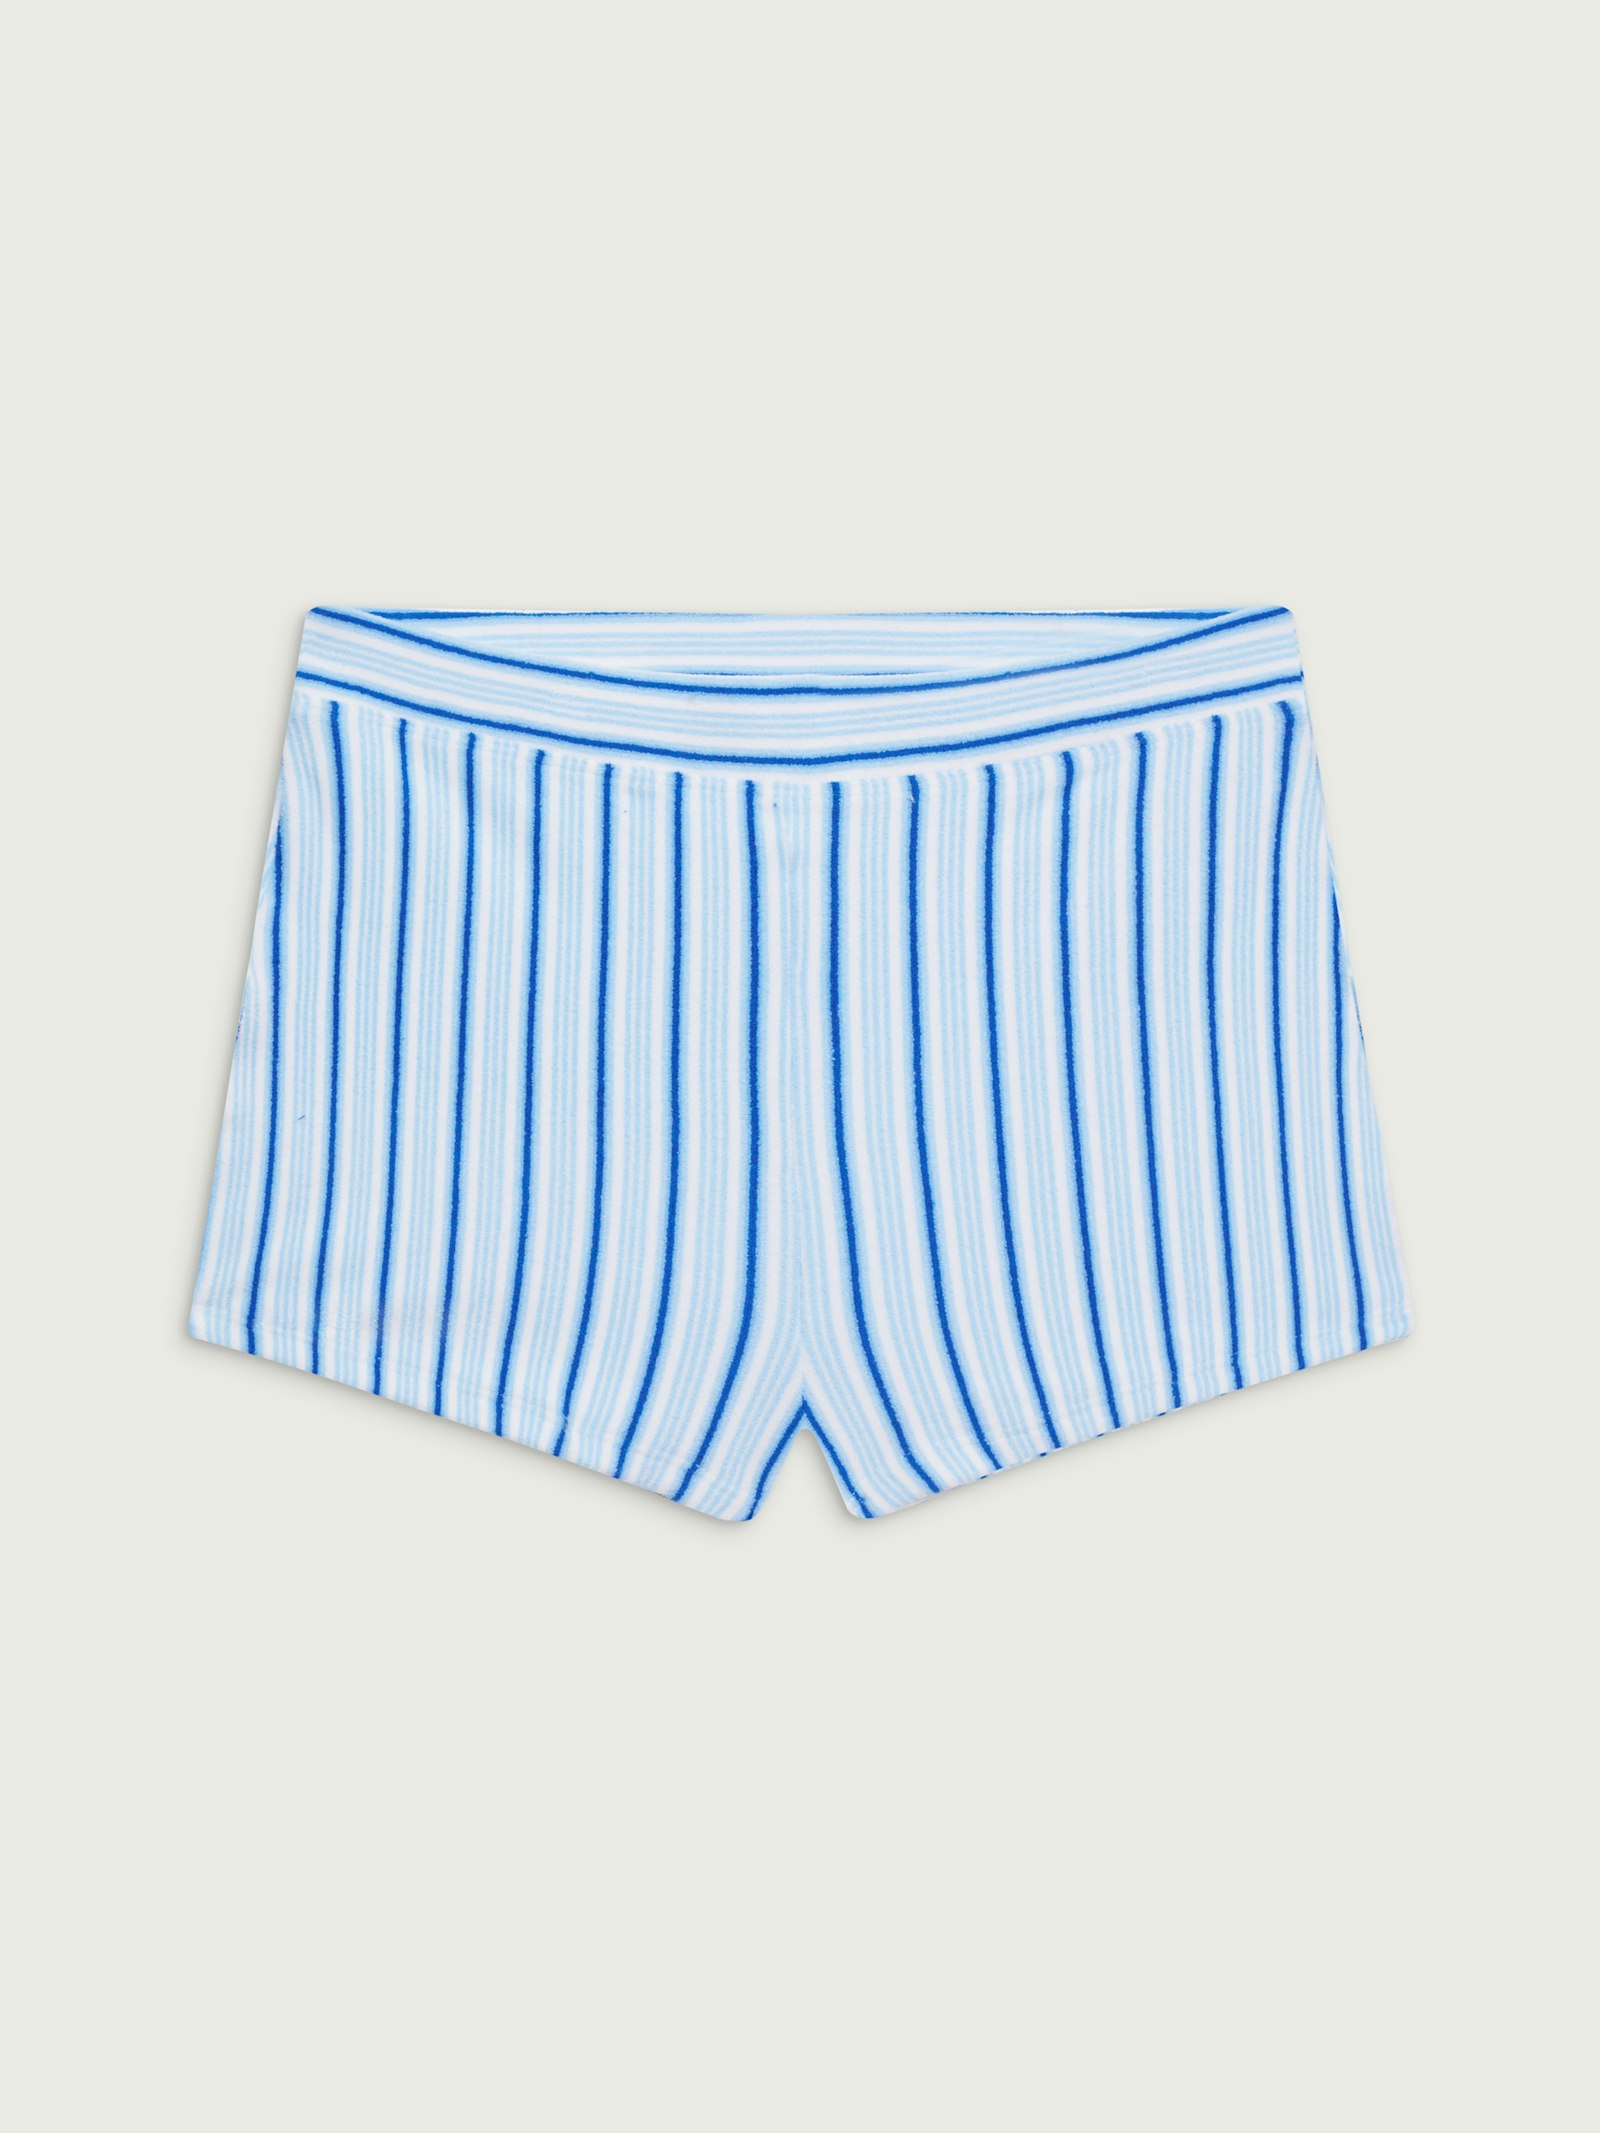 Rufus Terry Bikini Bottom Seaside Stripe